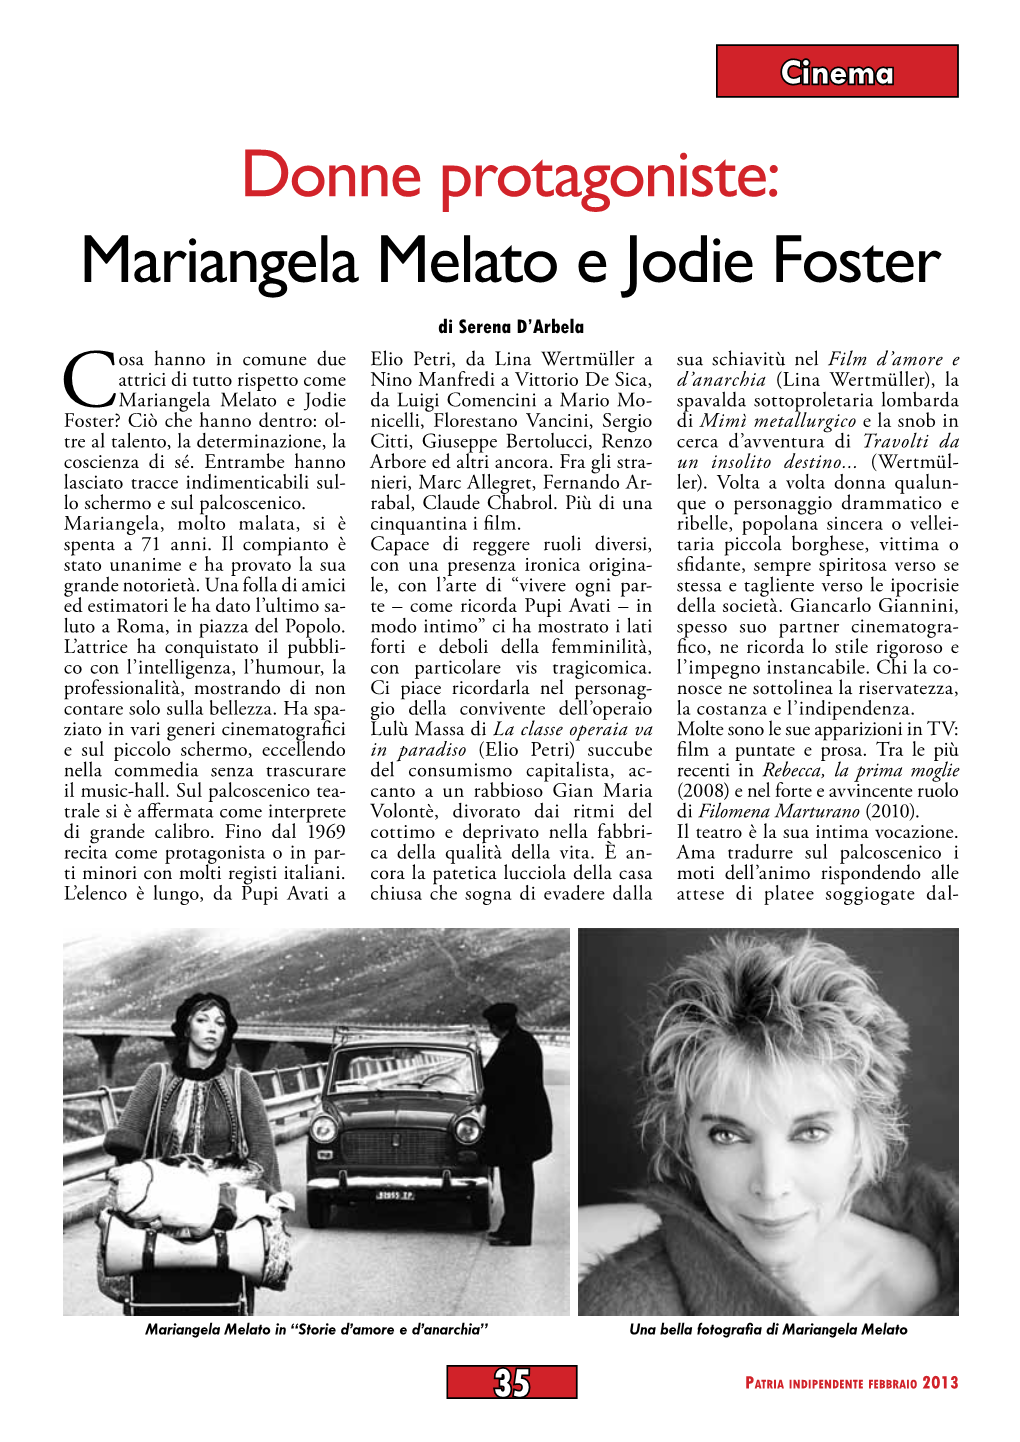 Donne Protagoniste: Mariangela Melato E Jodie Foster